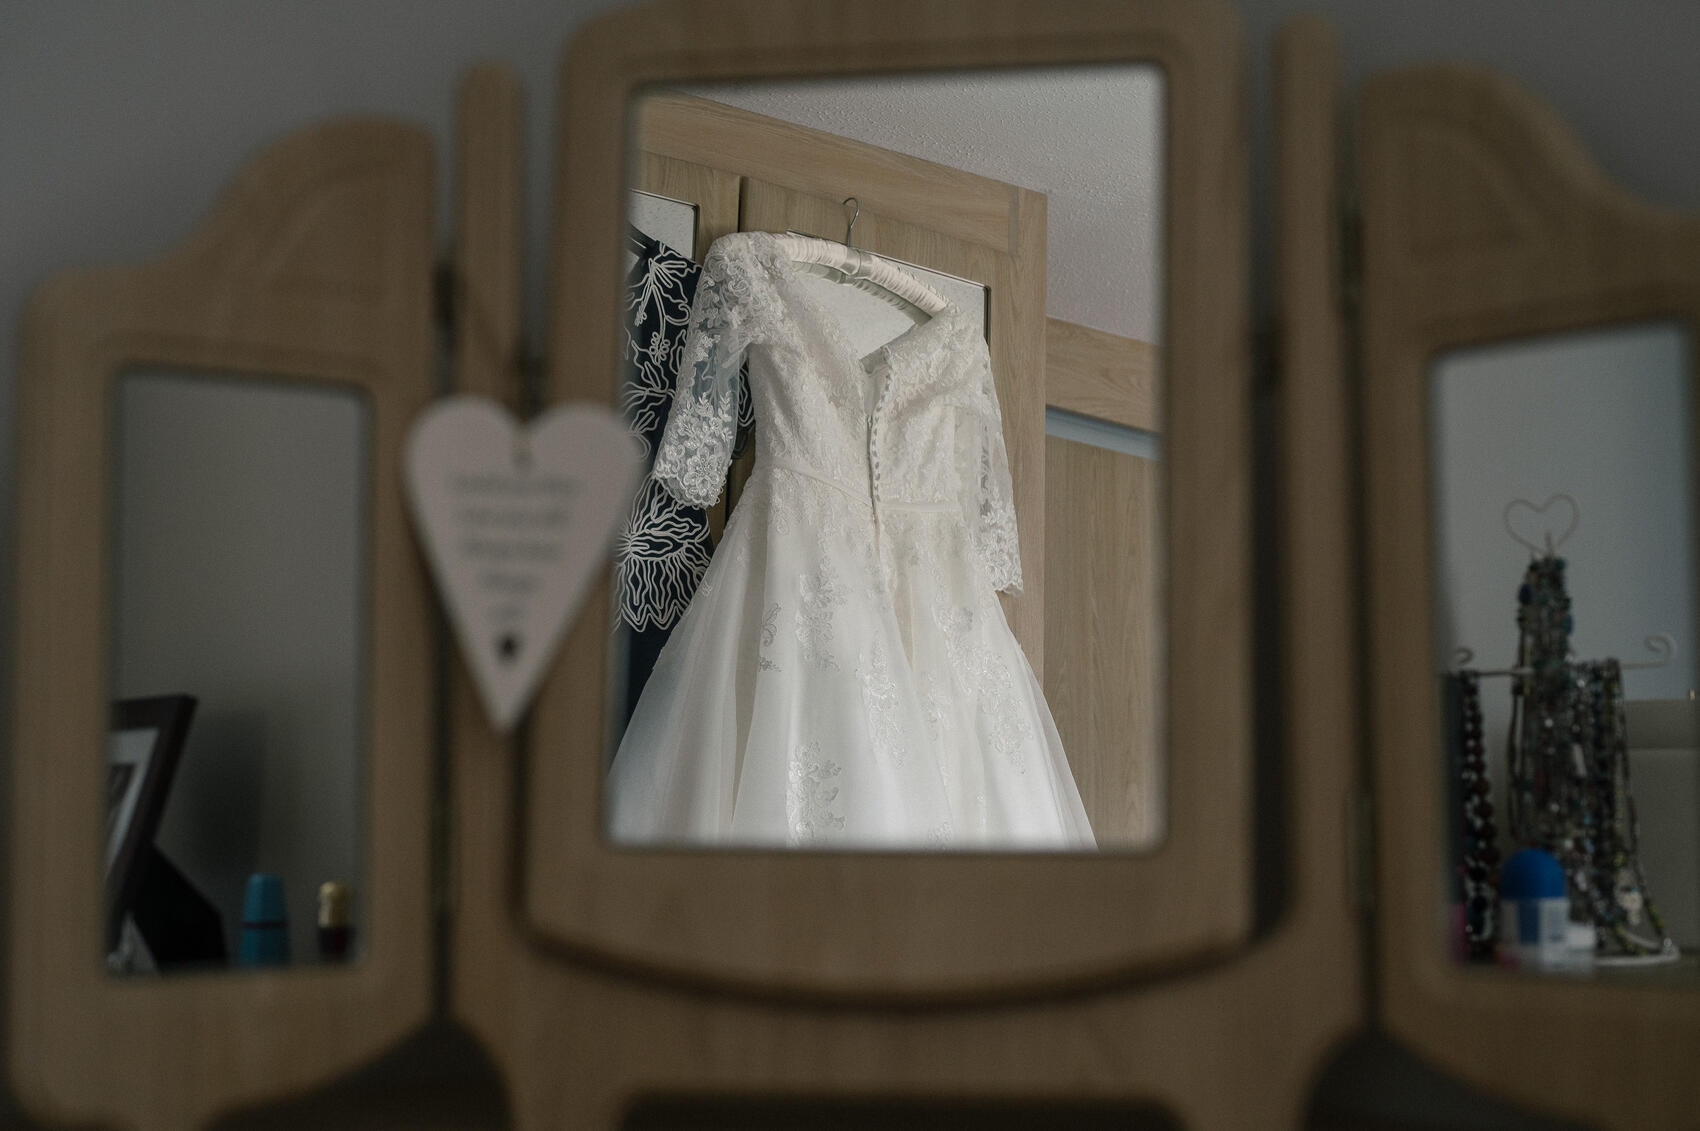 Highcliffe castle wedding dress